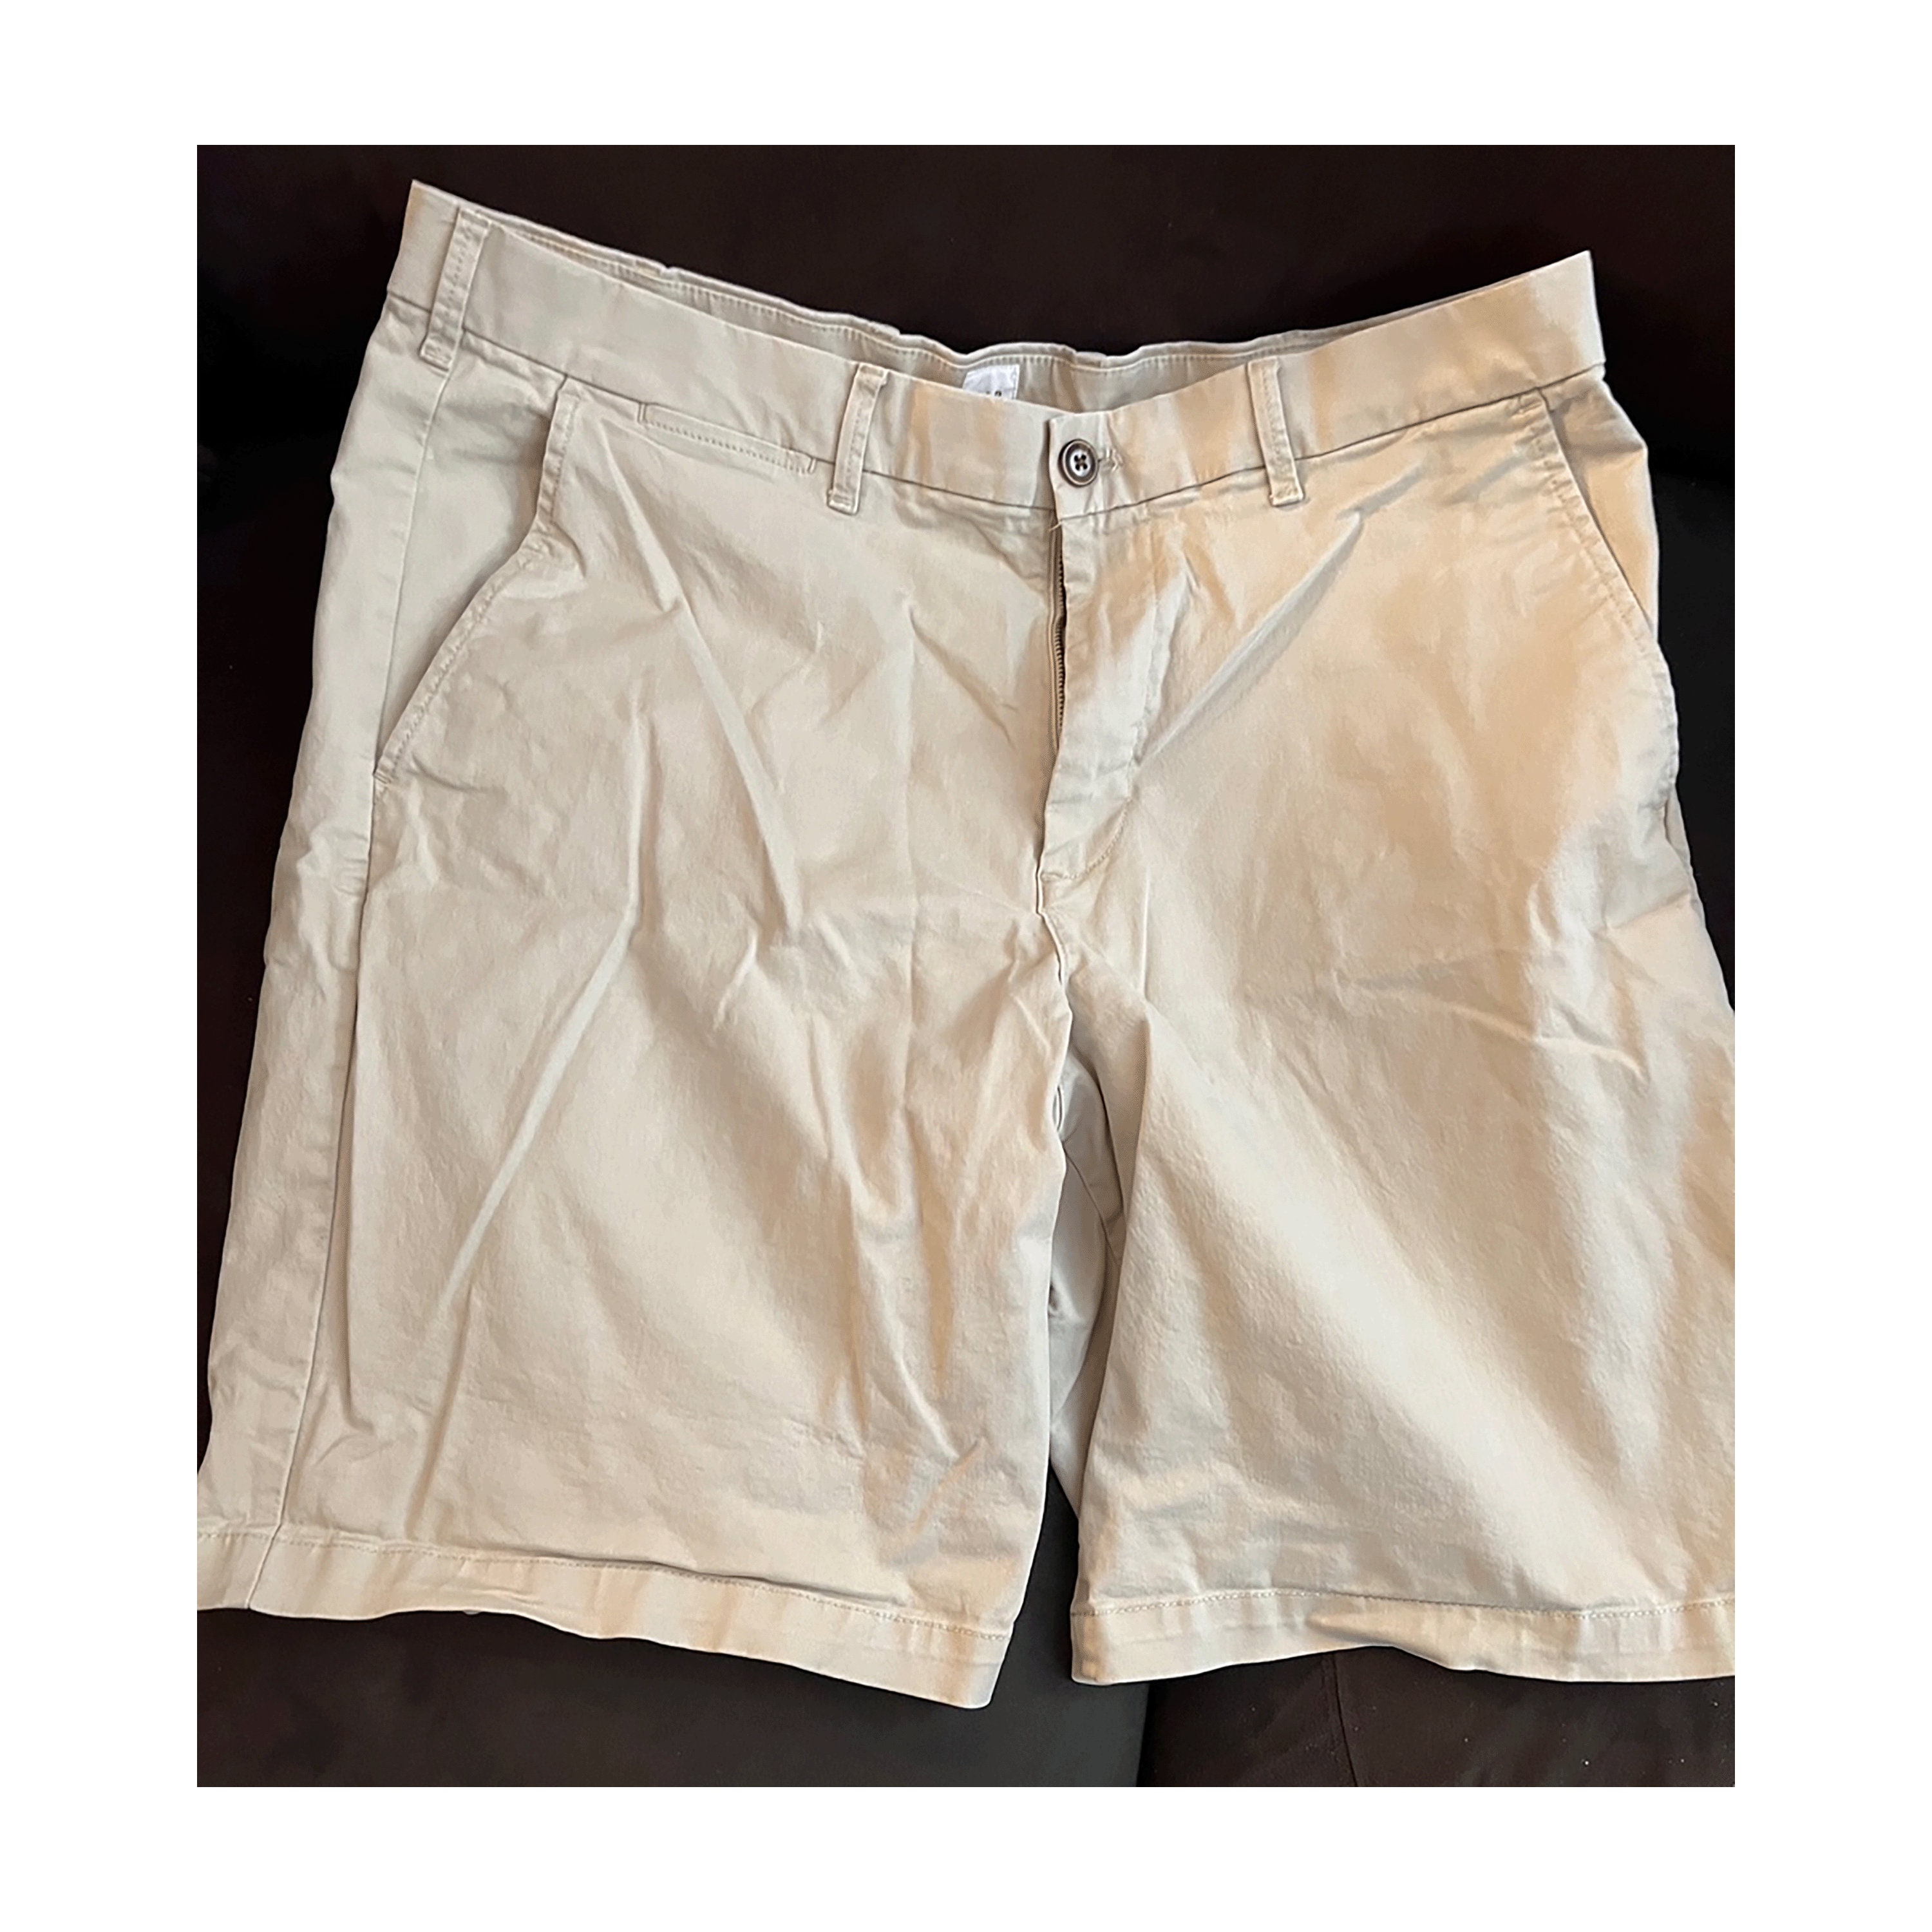 Vintage Gap Carpenter Shorts Size 33 Mens Denim Baggy Loose Fit Med Wash  2002